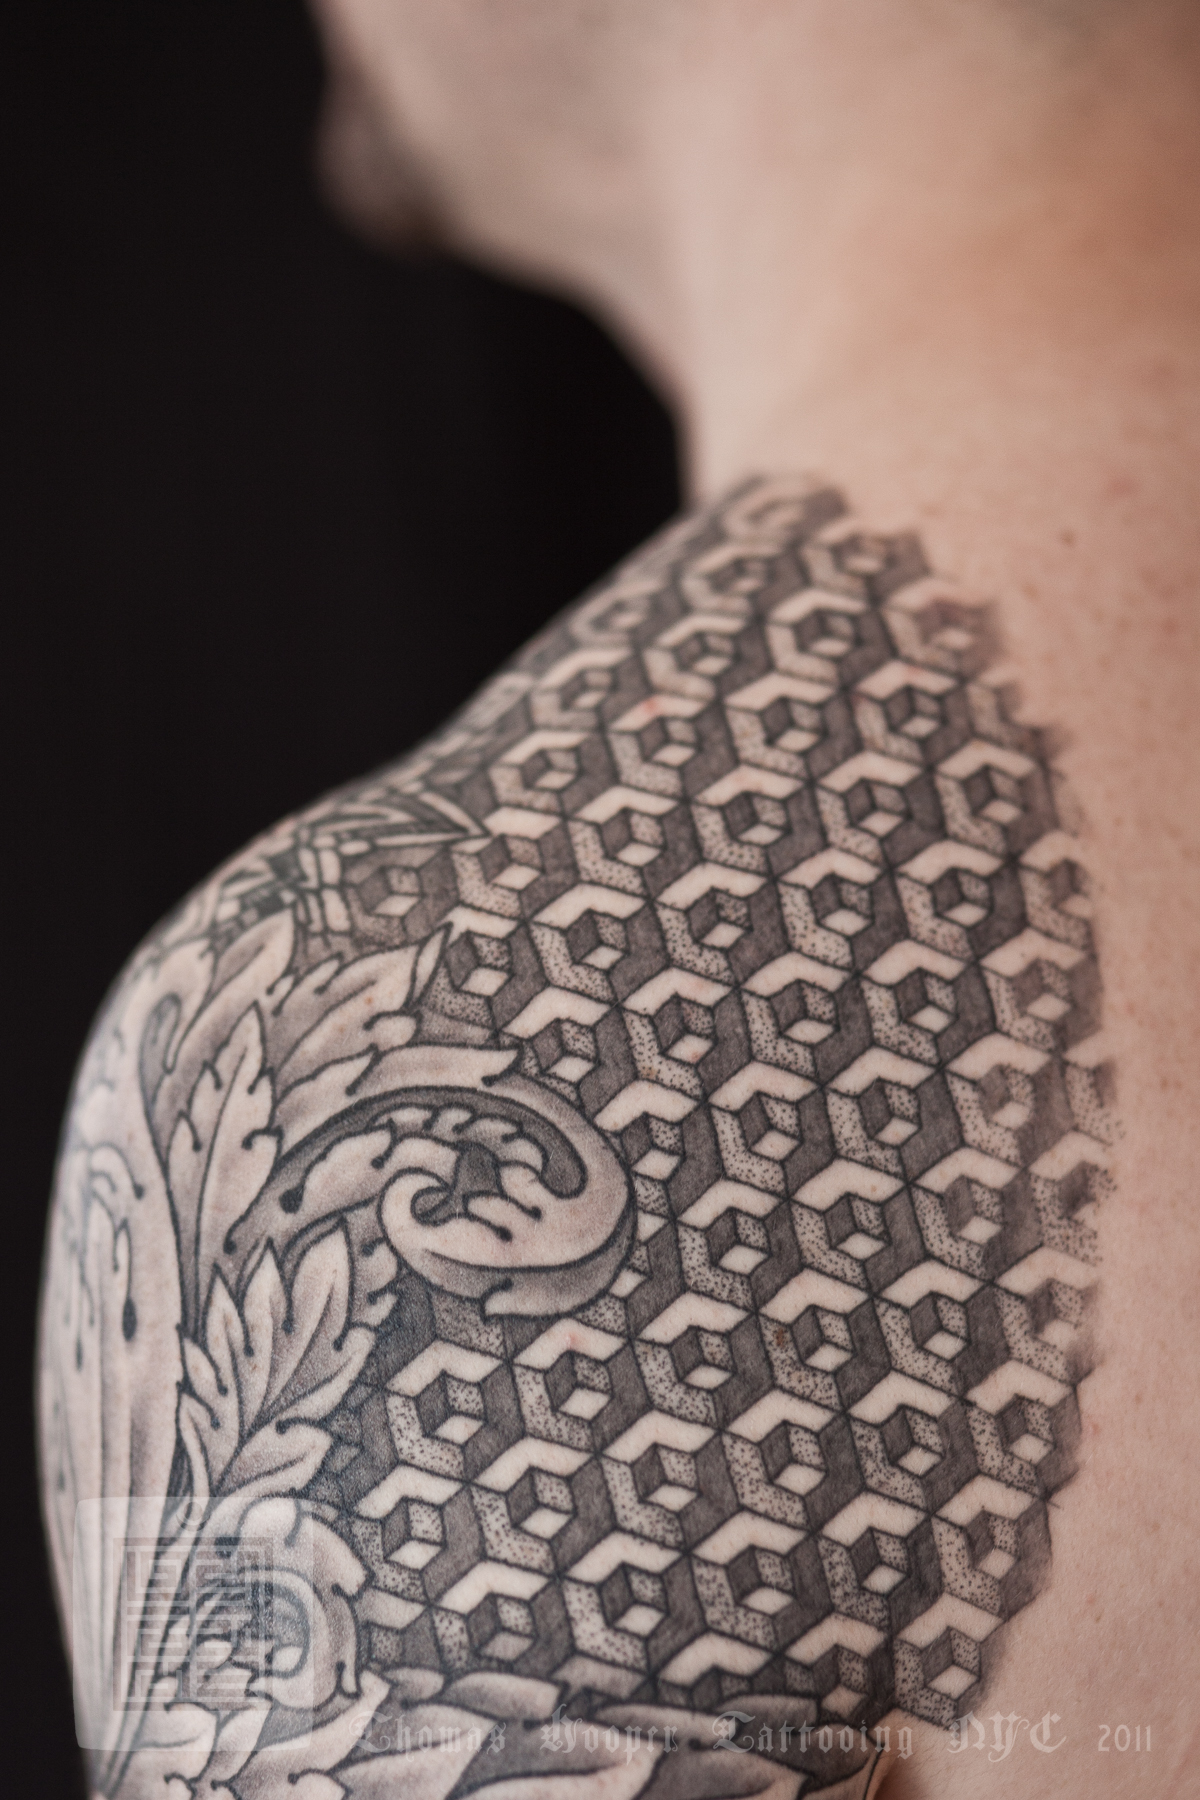 hexahedron-half-sleeve-tattoo-thomas-hooper-tattooing-002-june-27-2011